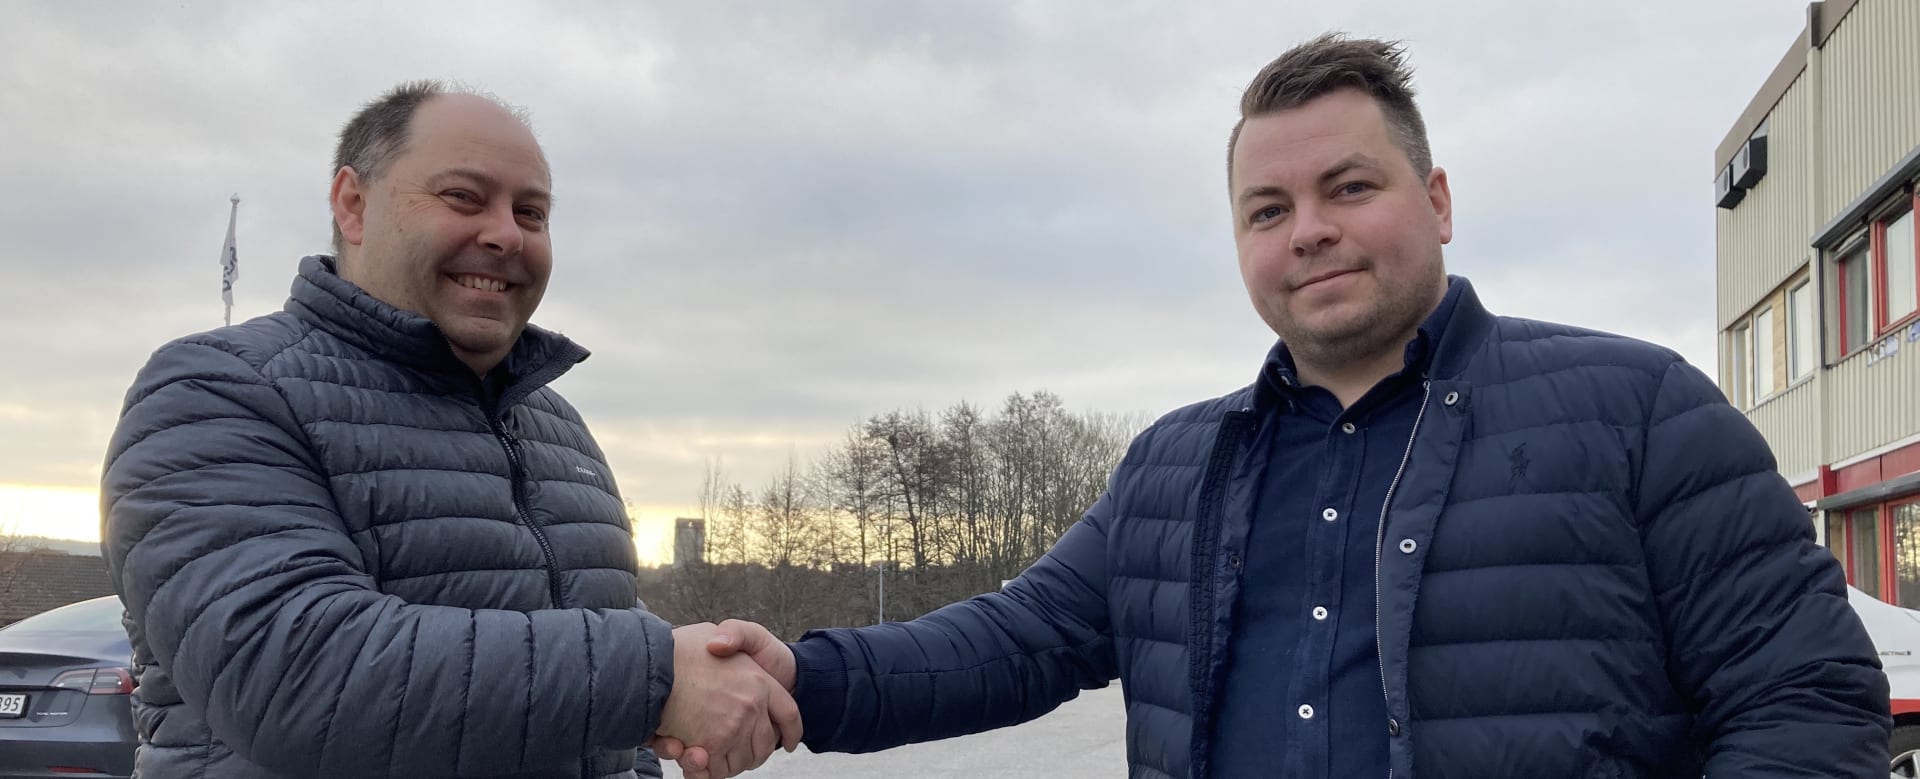 Daglig leder Kim A. Johansen ønsker Magnus Lie Nilsen velkommen til Solid Prosjekt